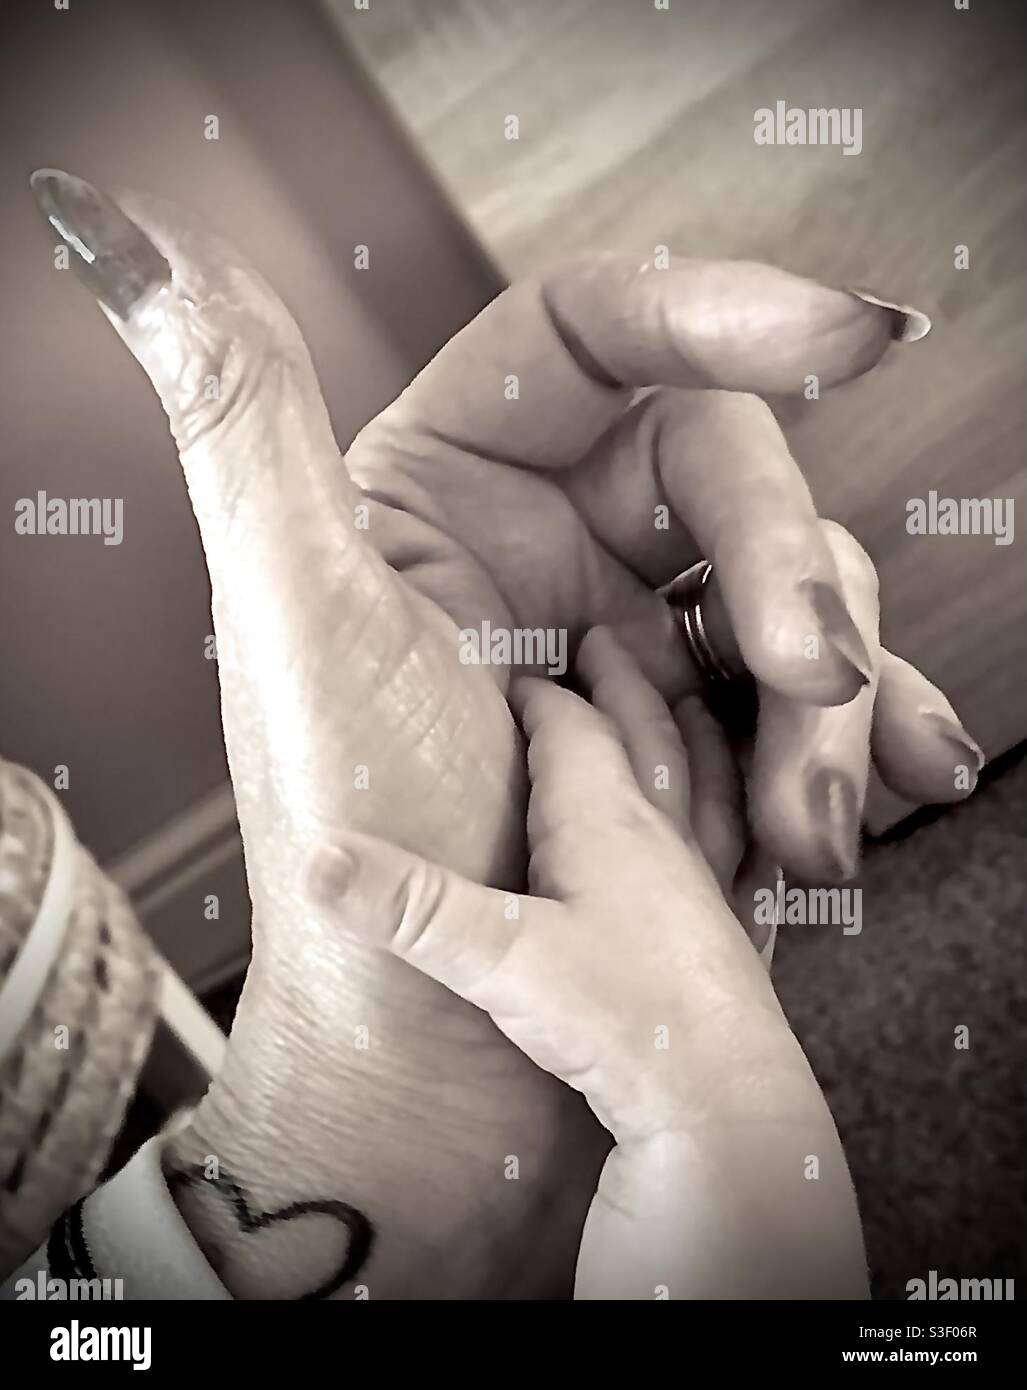 Baby & Grandma hands Stock Photo